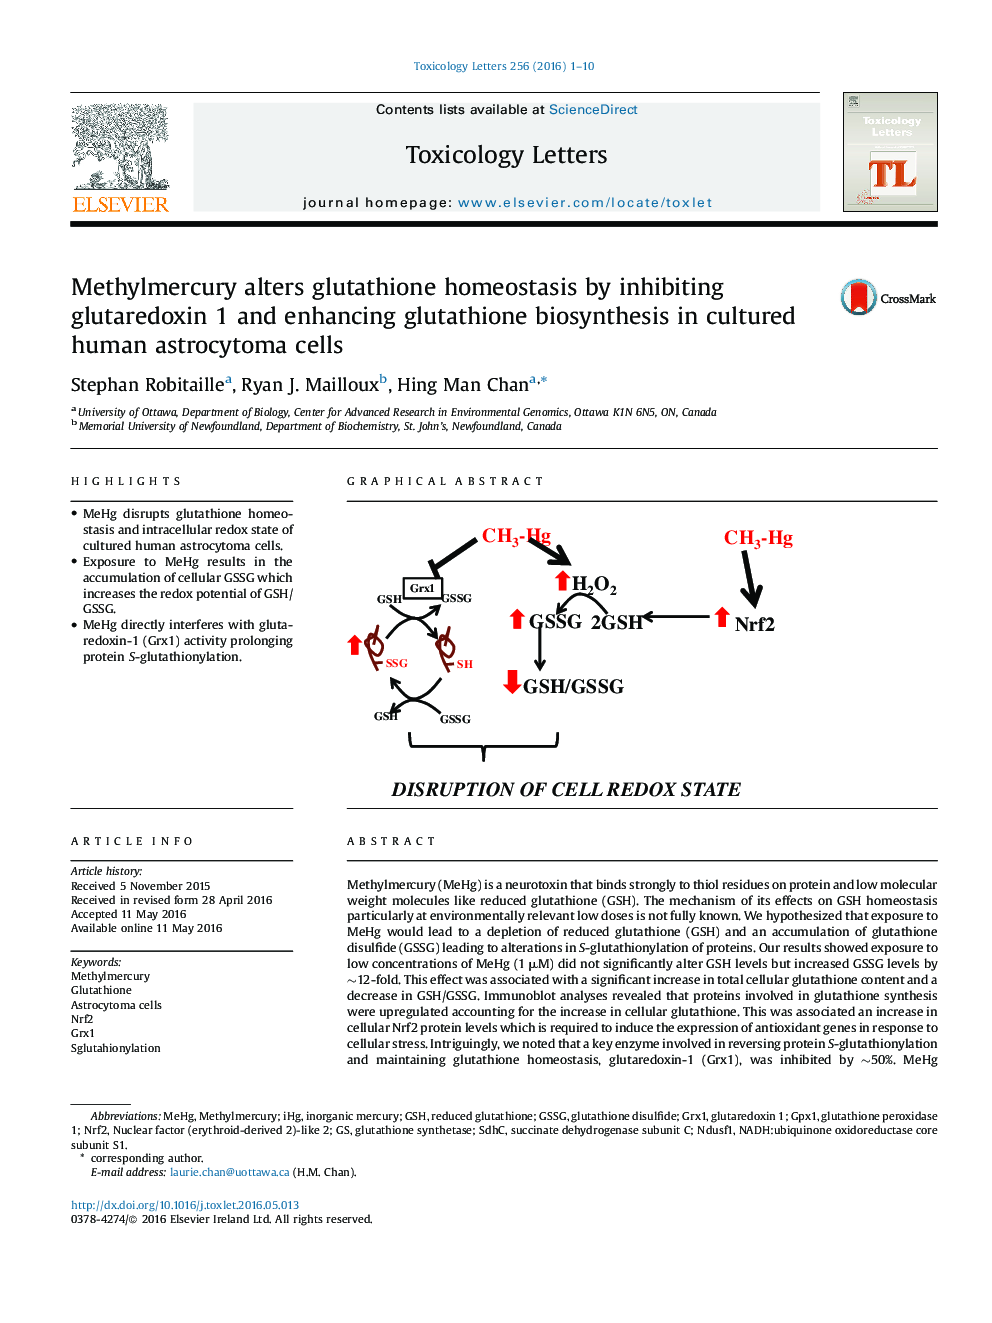 متیل باعث تغییر هموستاز گلوتاتیون با مهار glutaredoxin 1 و افزایش بیوسنتز گلوتاتیون در سلول های کشت شده انسانی آستروسیتوما می شود